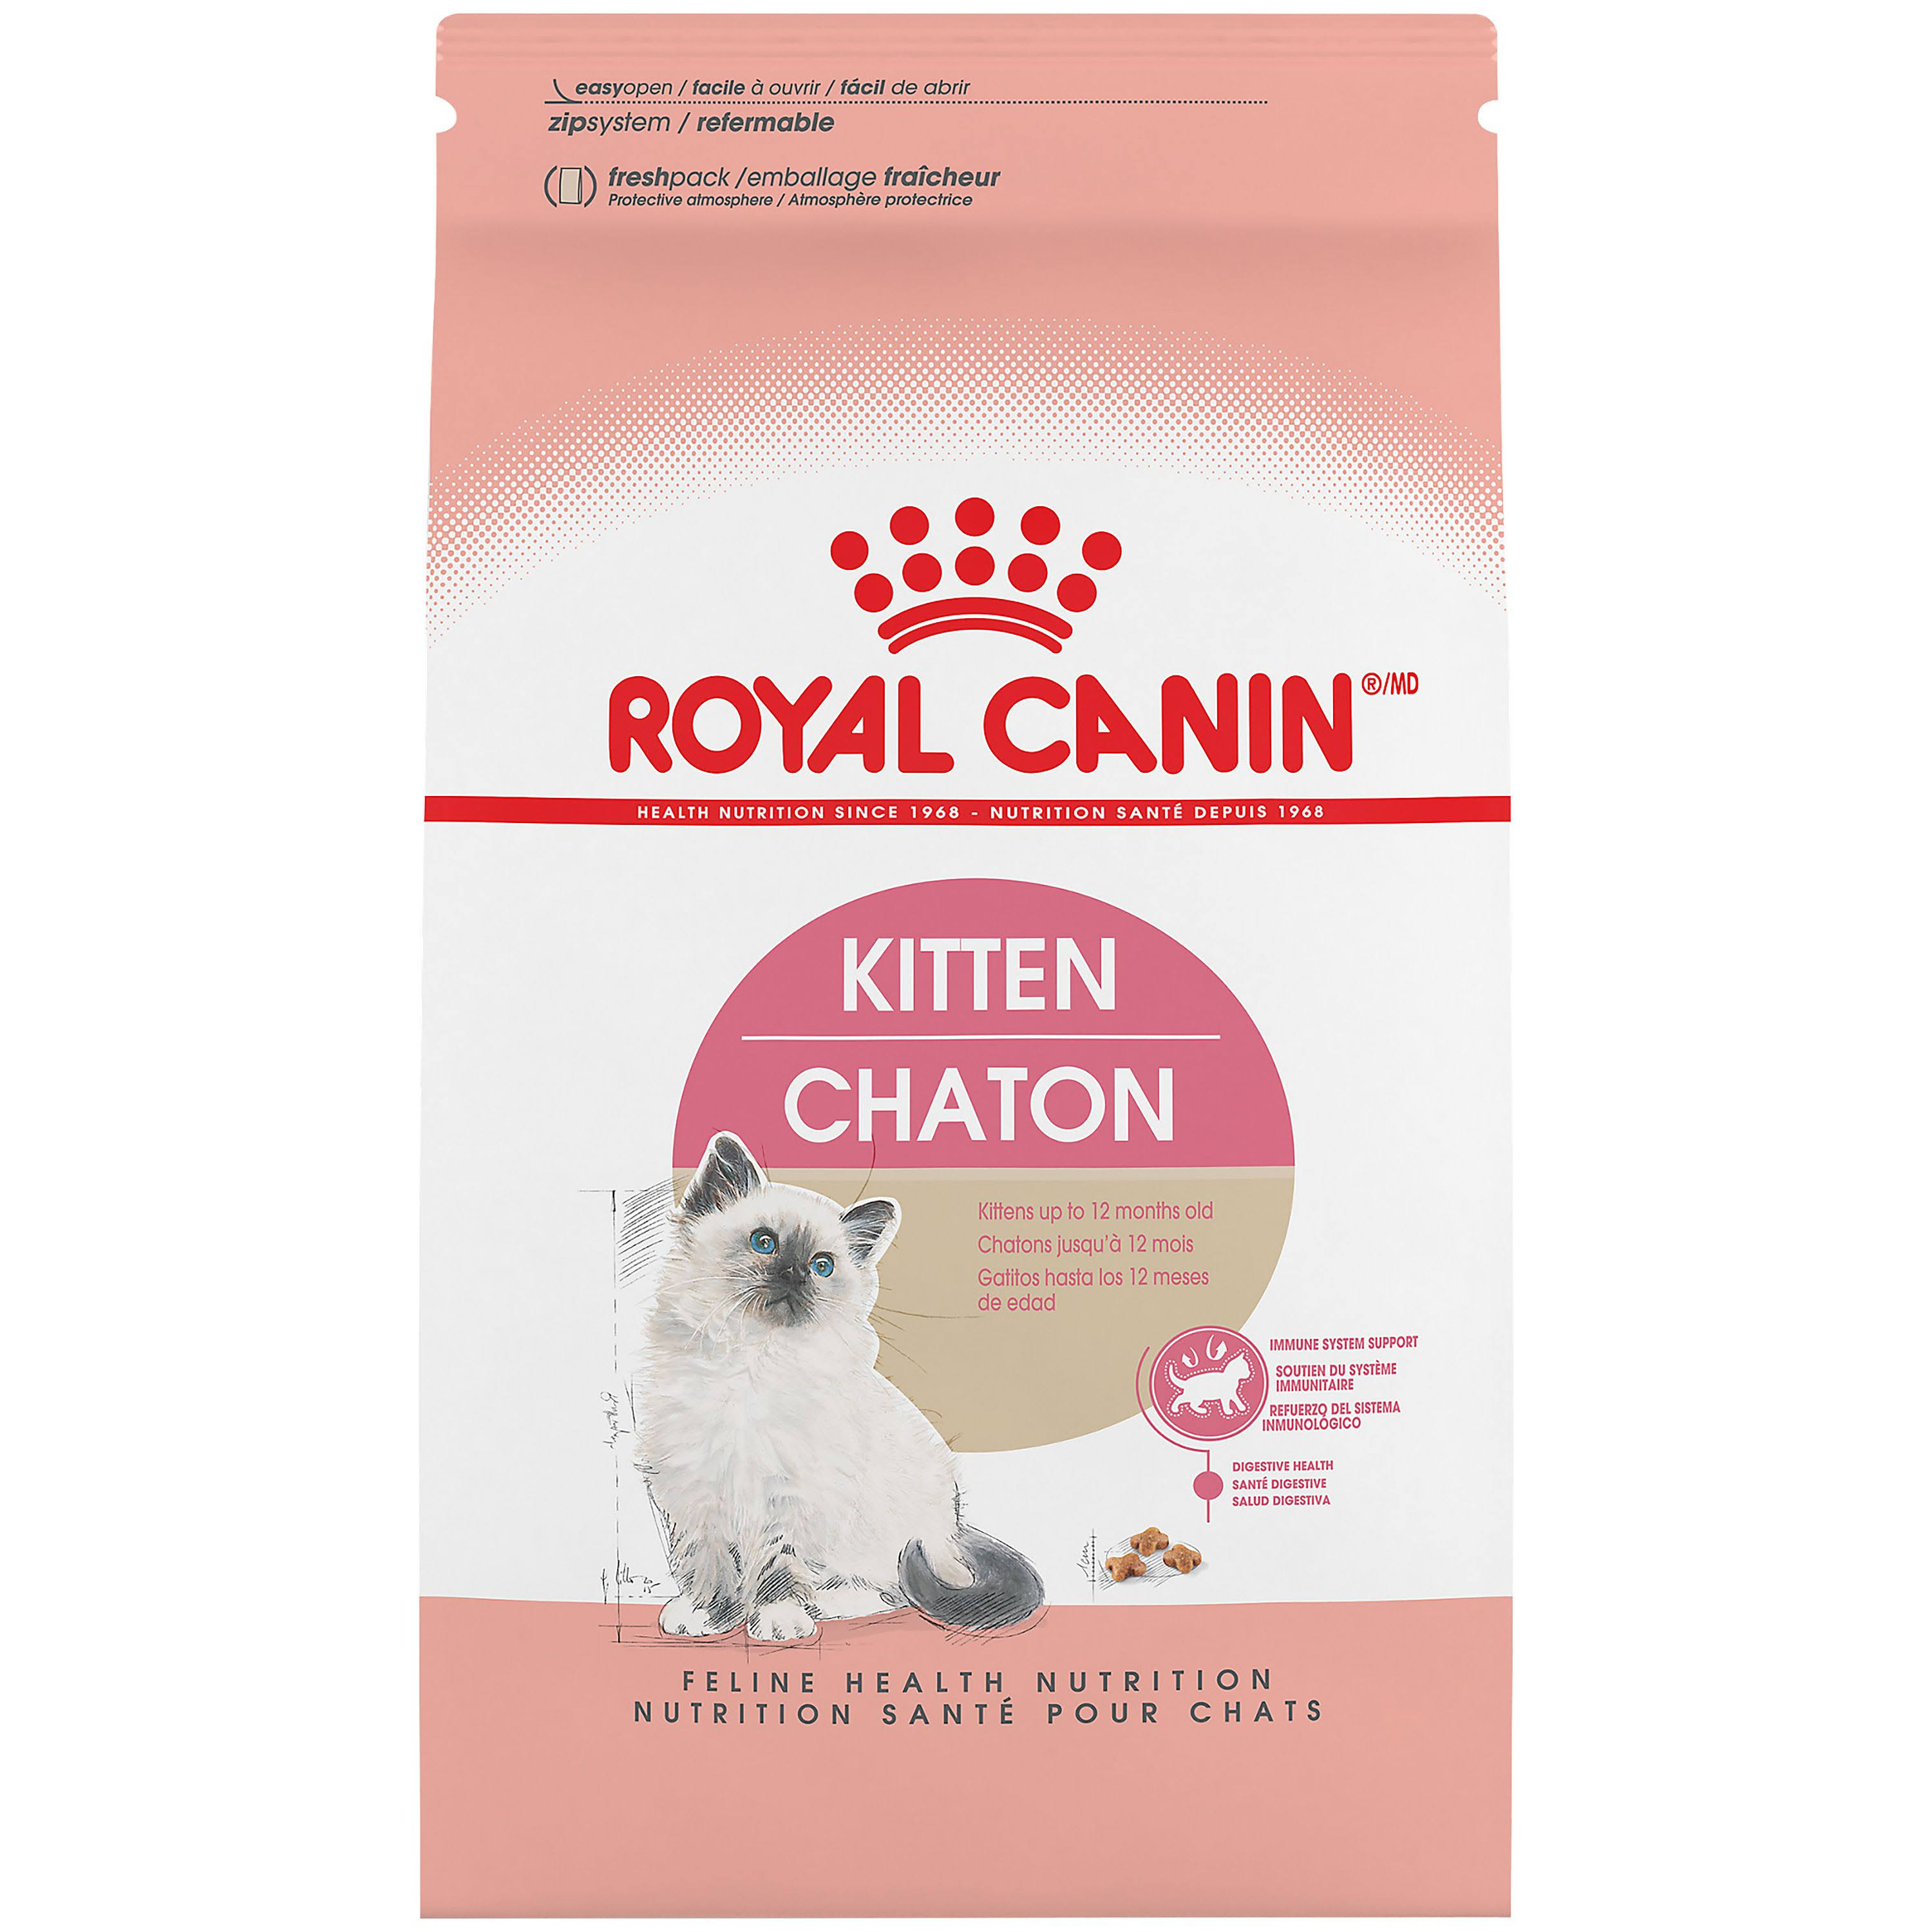 Royal Canin Kitten Food